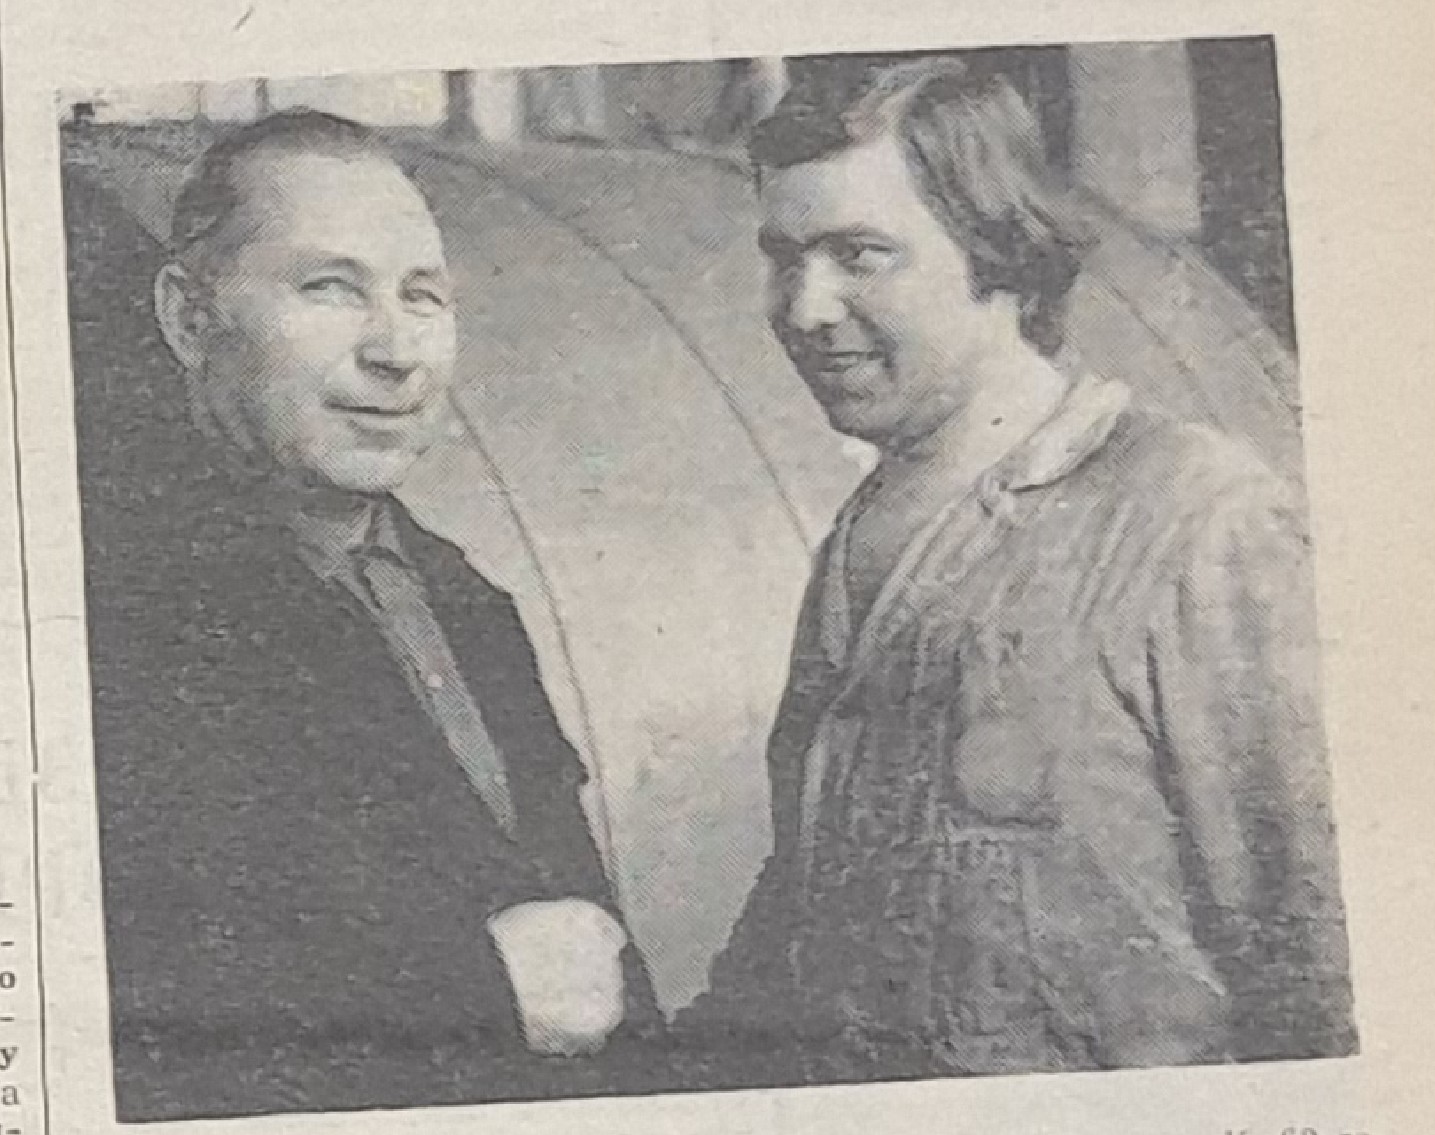 начальник смены ТЭС Борис Михайлович Ванюшов (слева) и машинист паровых котлов Вячеслав Ефимович Пелюшов